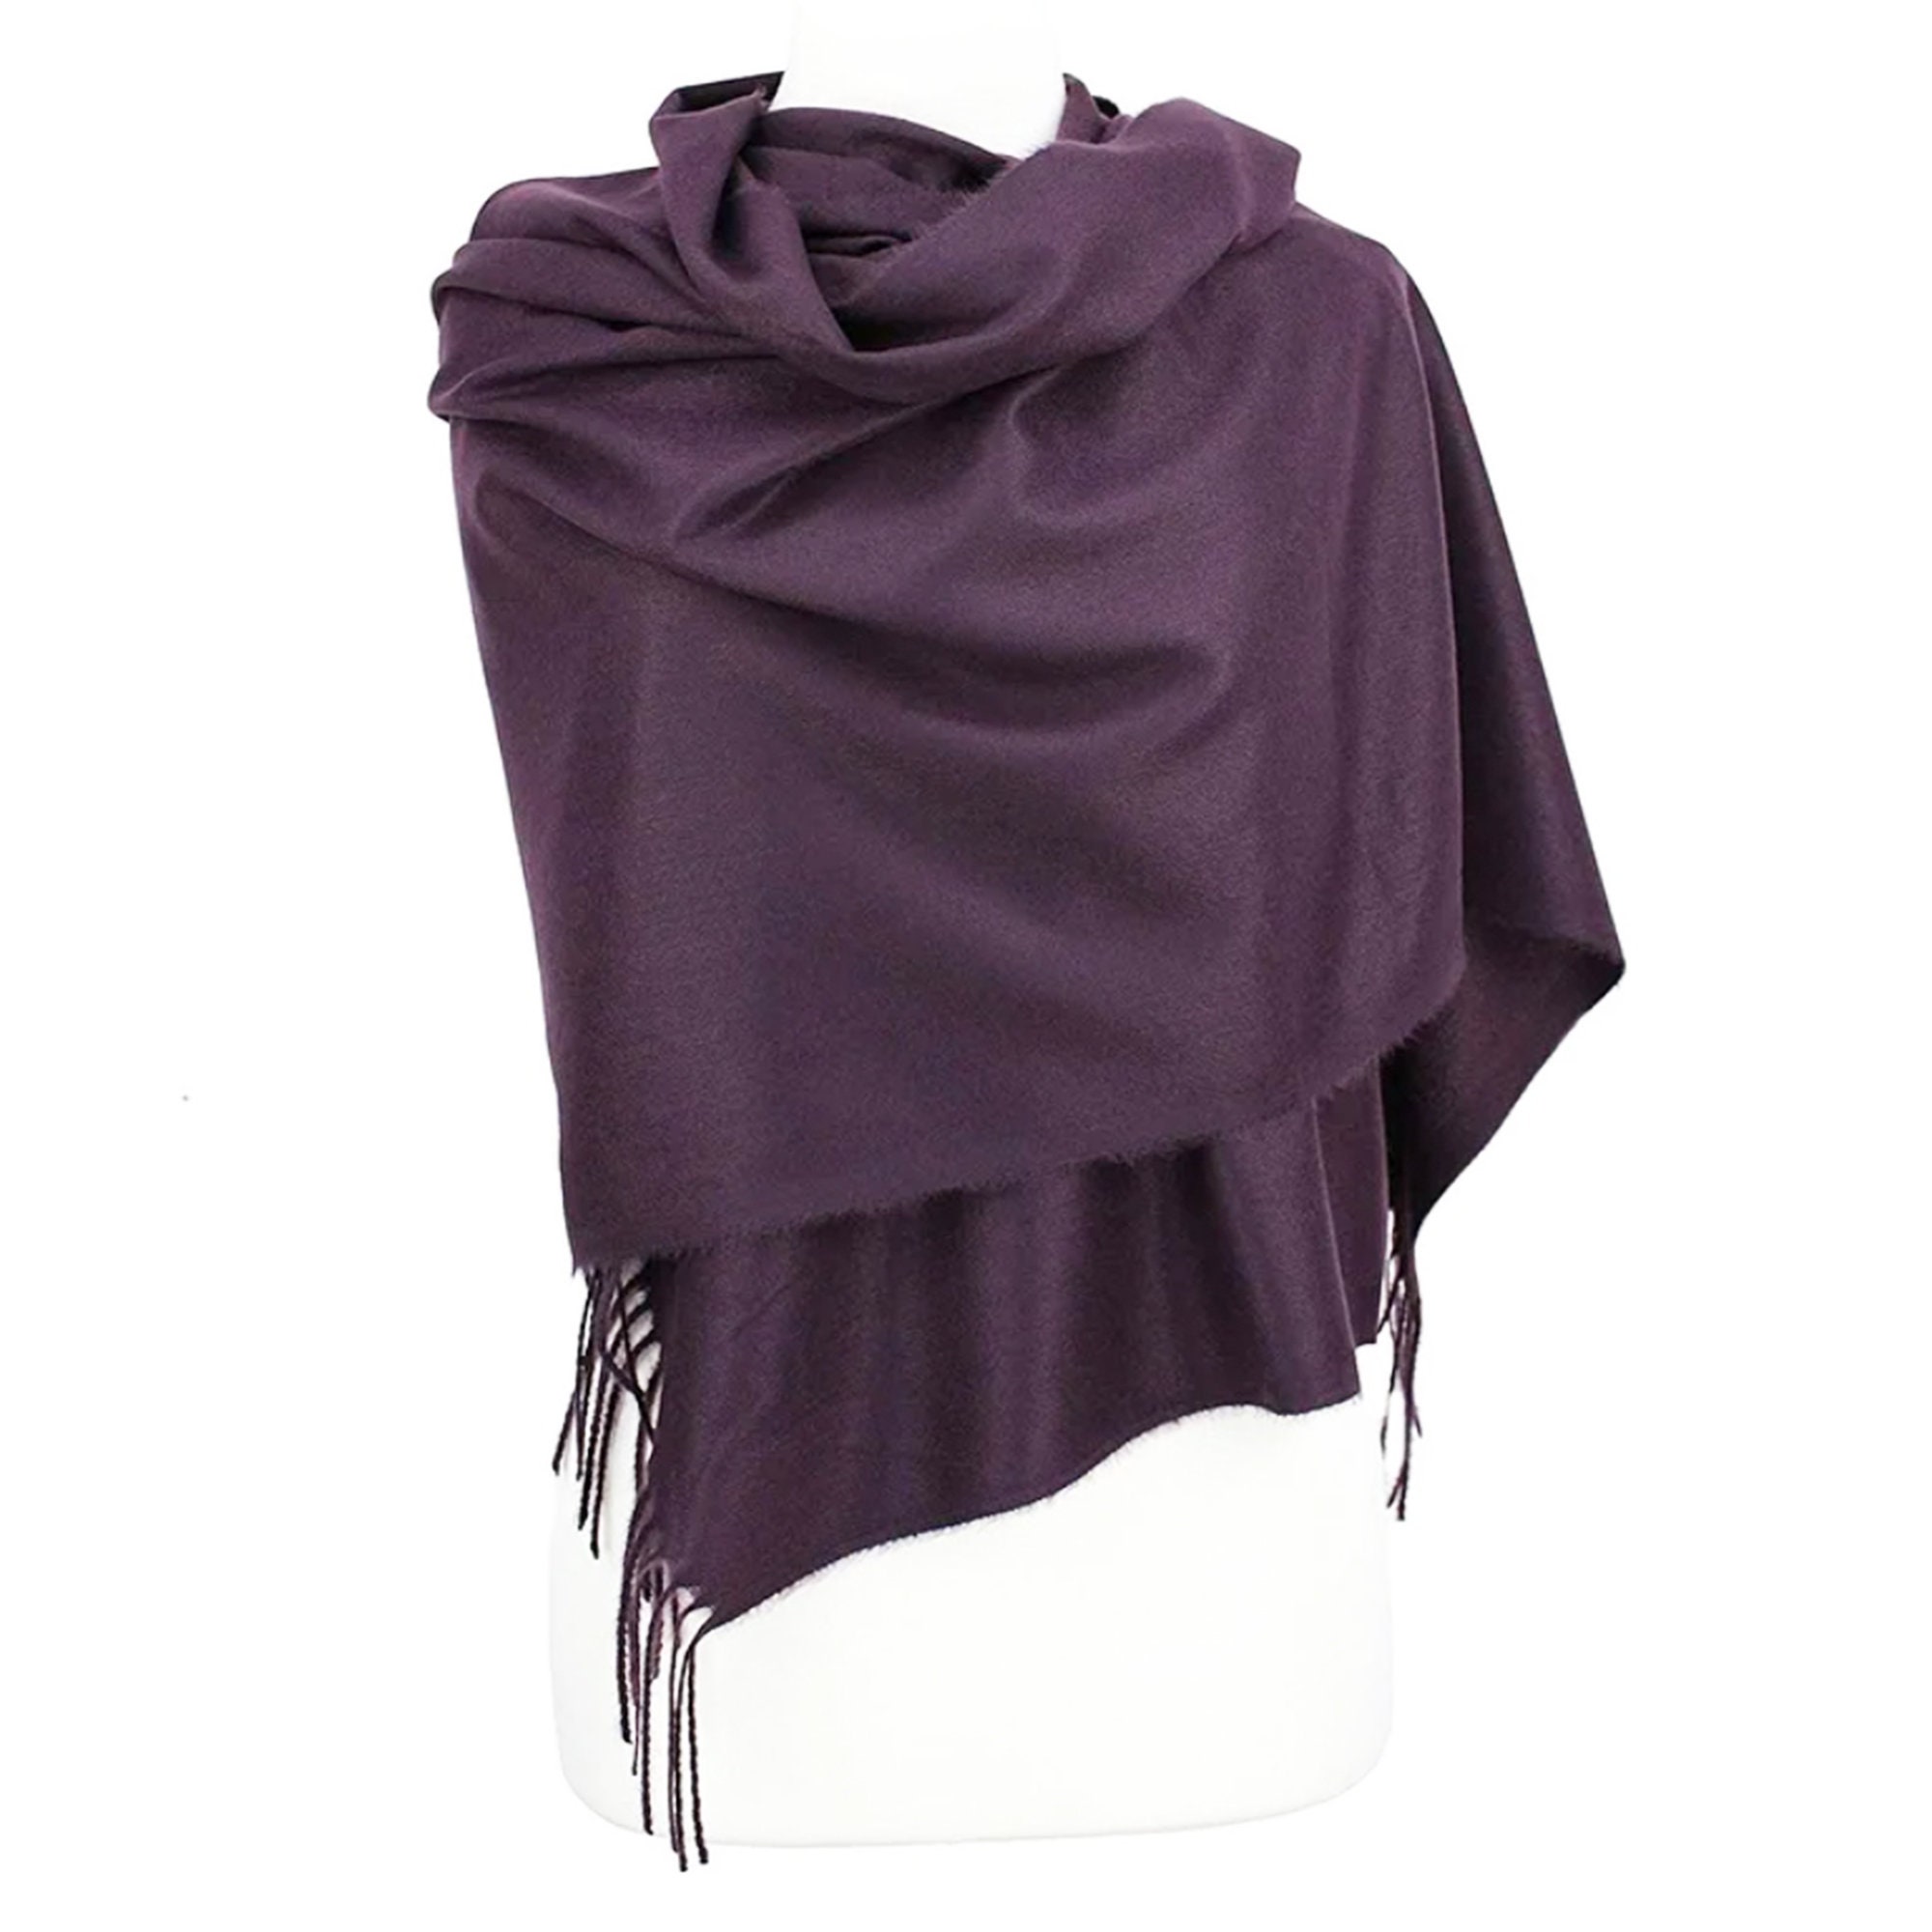 Blue/Purple Single discount 98% NoName shawl WOMEN FASHION Accessories Shawl Purple 